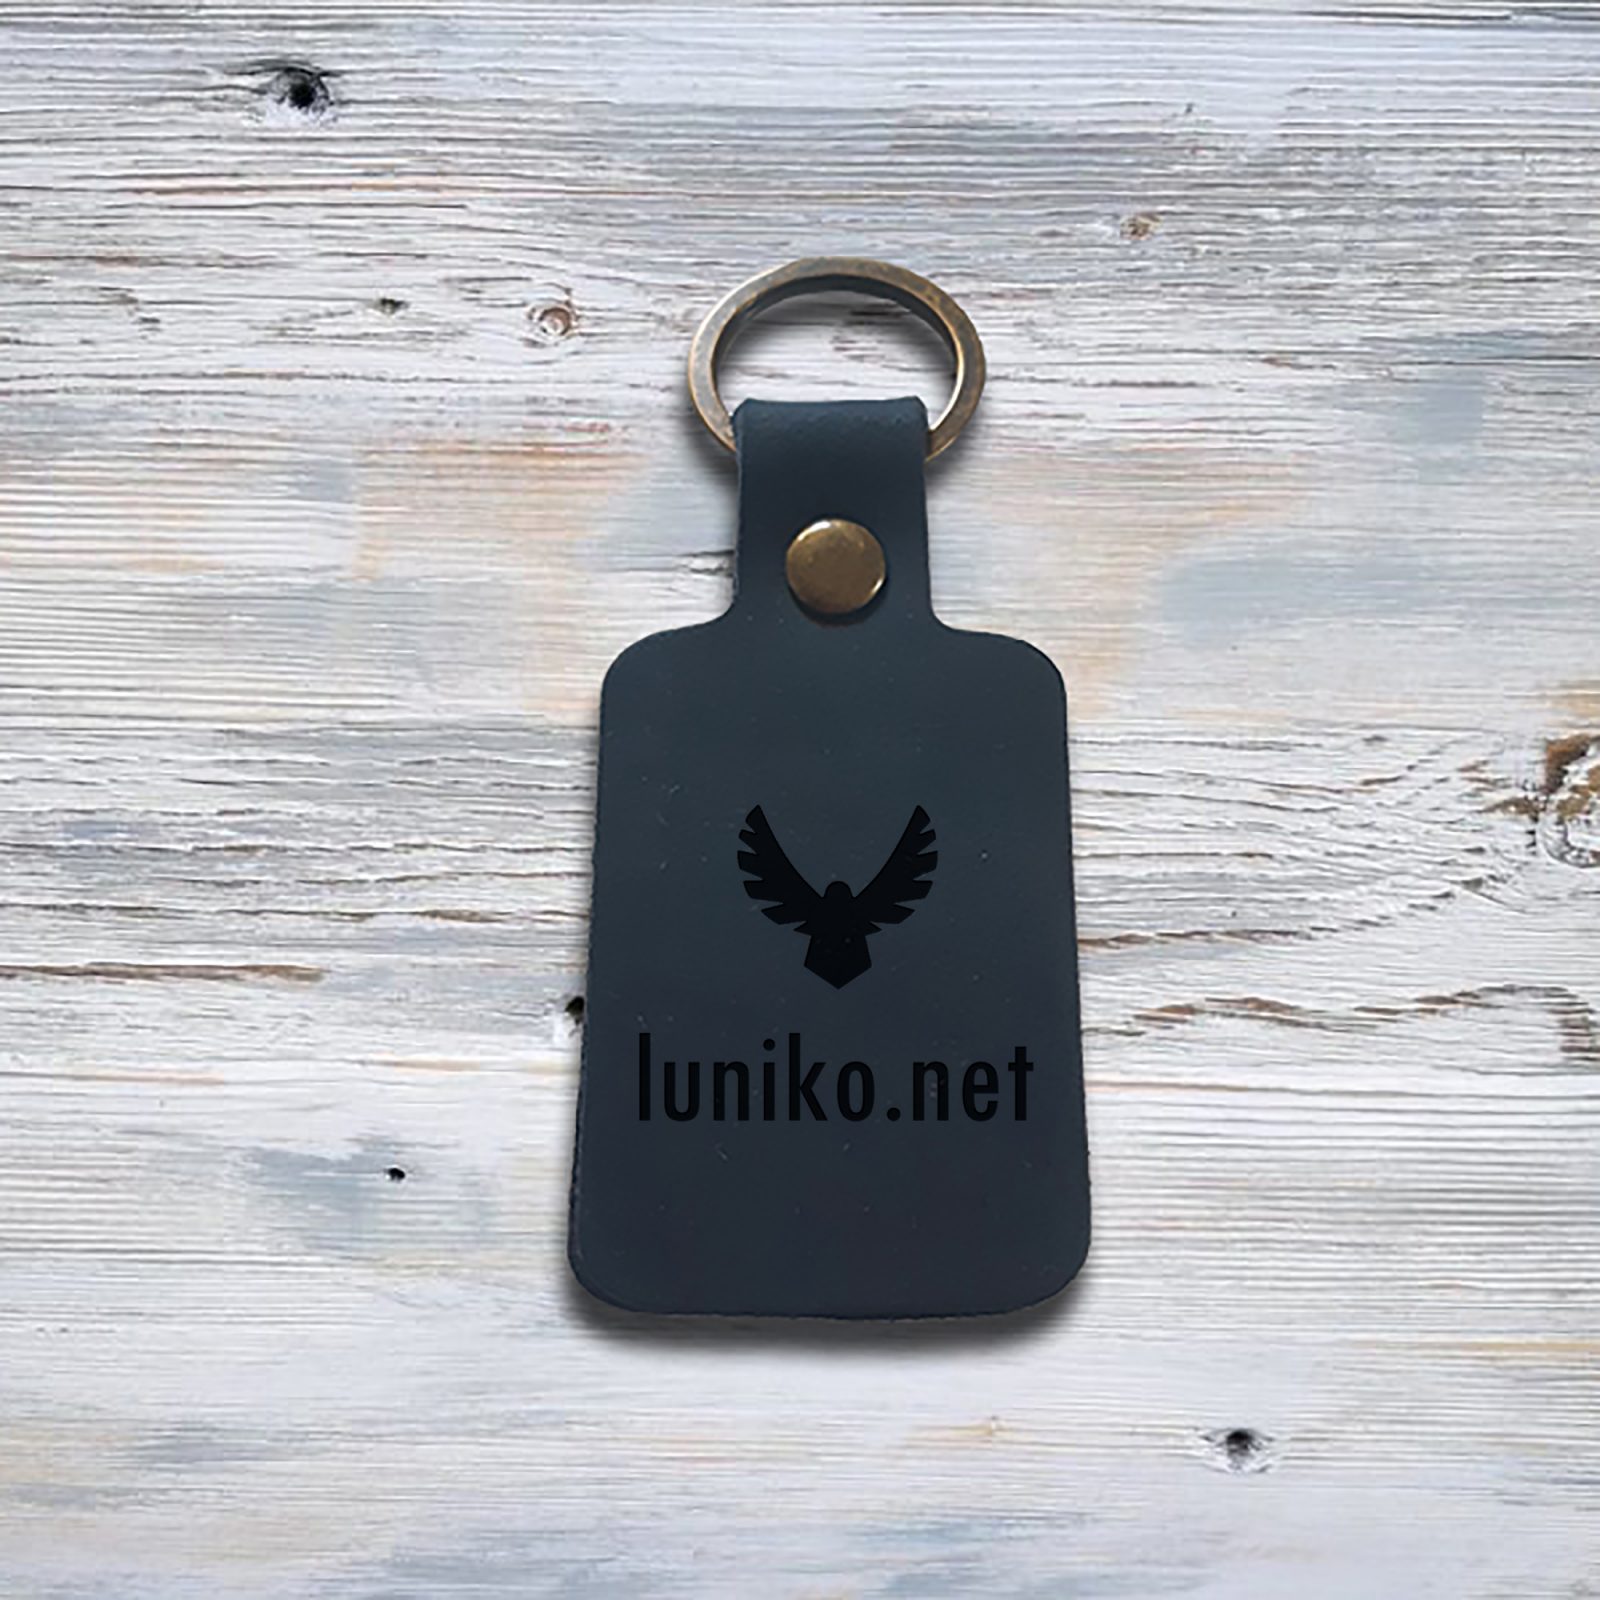 https://luniko.net/wp-content/uploads/2022/01/leather-keychain-with-personalization-rectangular-dark-blue-luniko-net.jpg